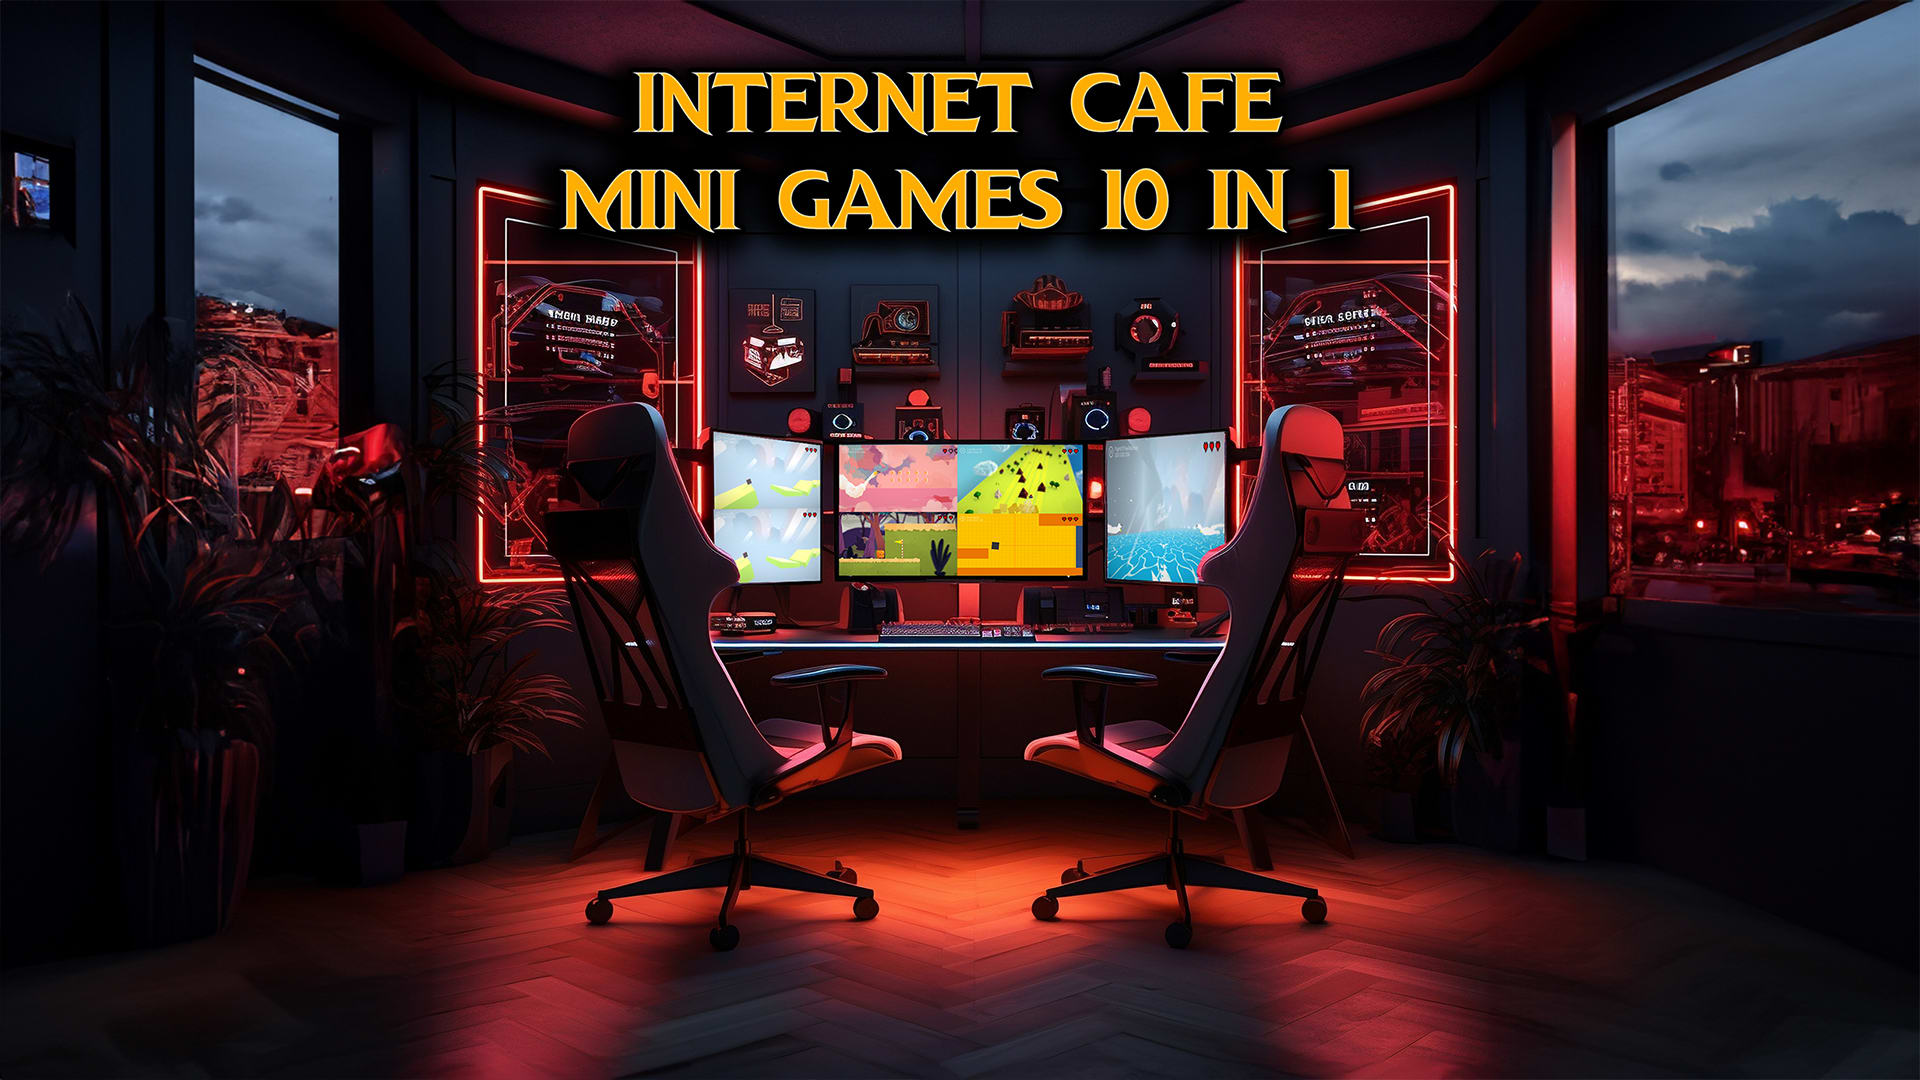 Mini-jeux de café Internet 10 en 1 1